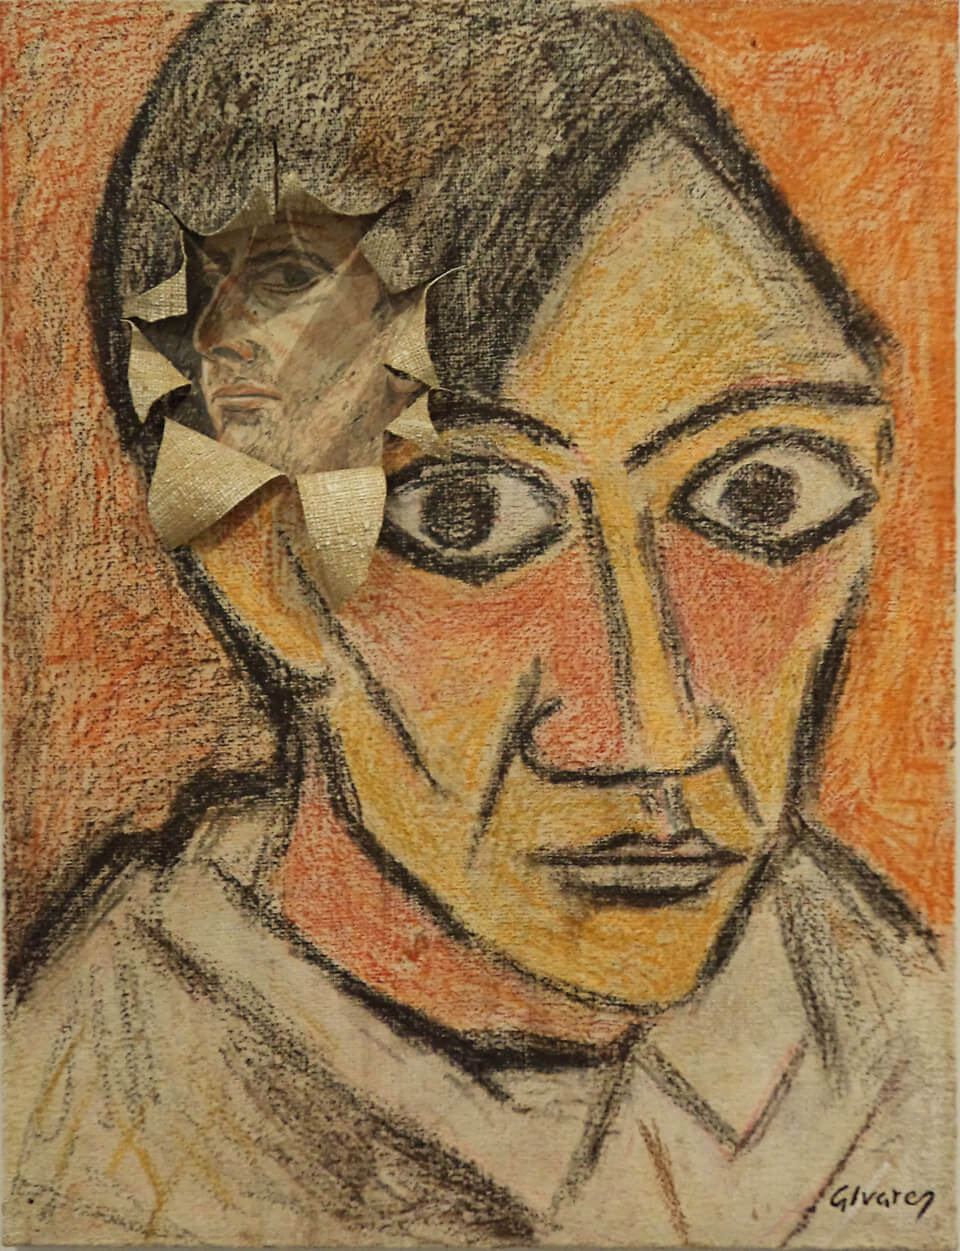 Picasso, estela infinta, Apócrifa Art Magazine